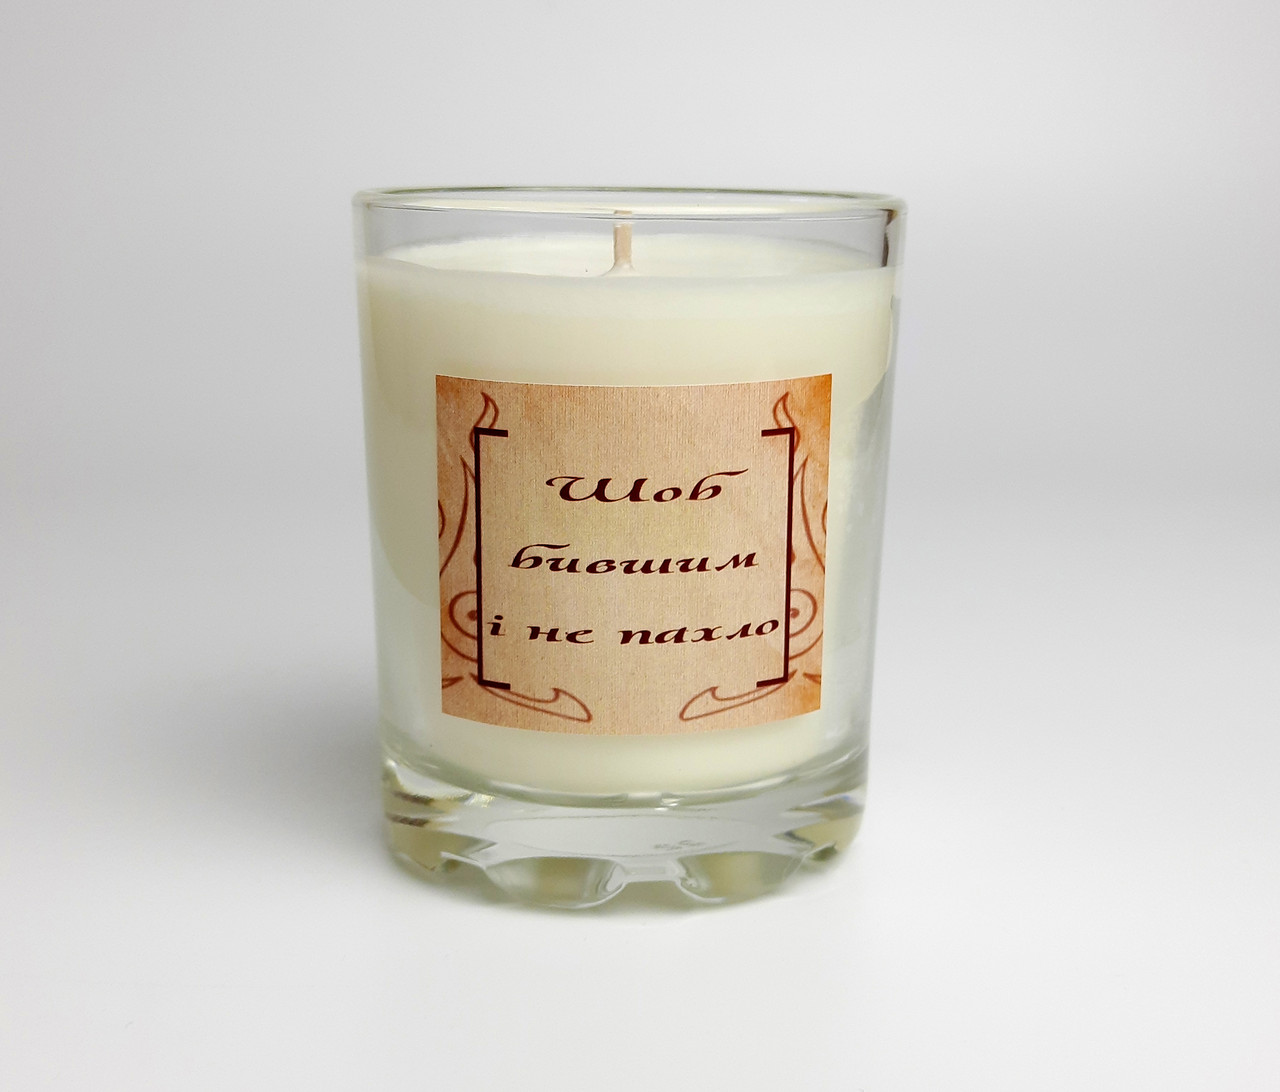 Свічка  "Шоб бившим и не пахло" з соєвого воску, крафтова, подарунок універсальний, свічка арома для затишку